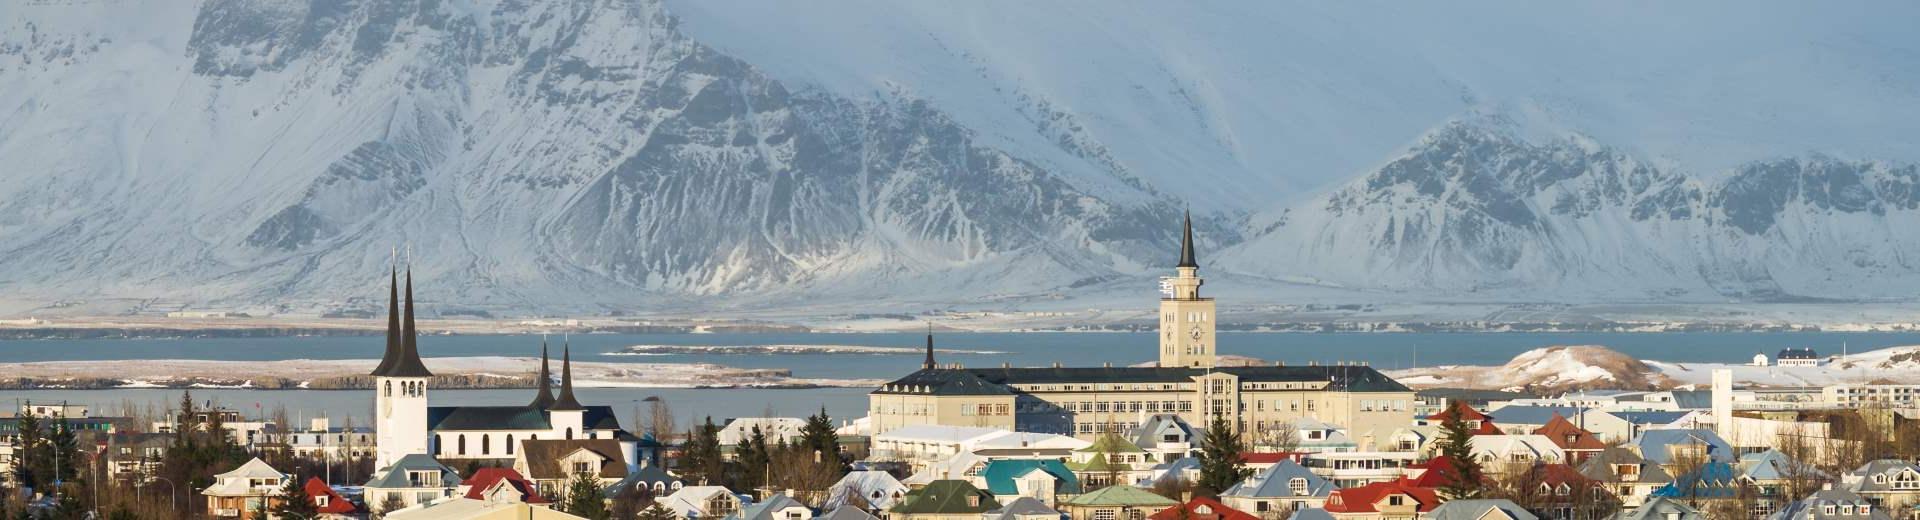 Ferienwohnungen & Ferienhäuser für Urlaub in Reykjavik - Casamundo